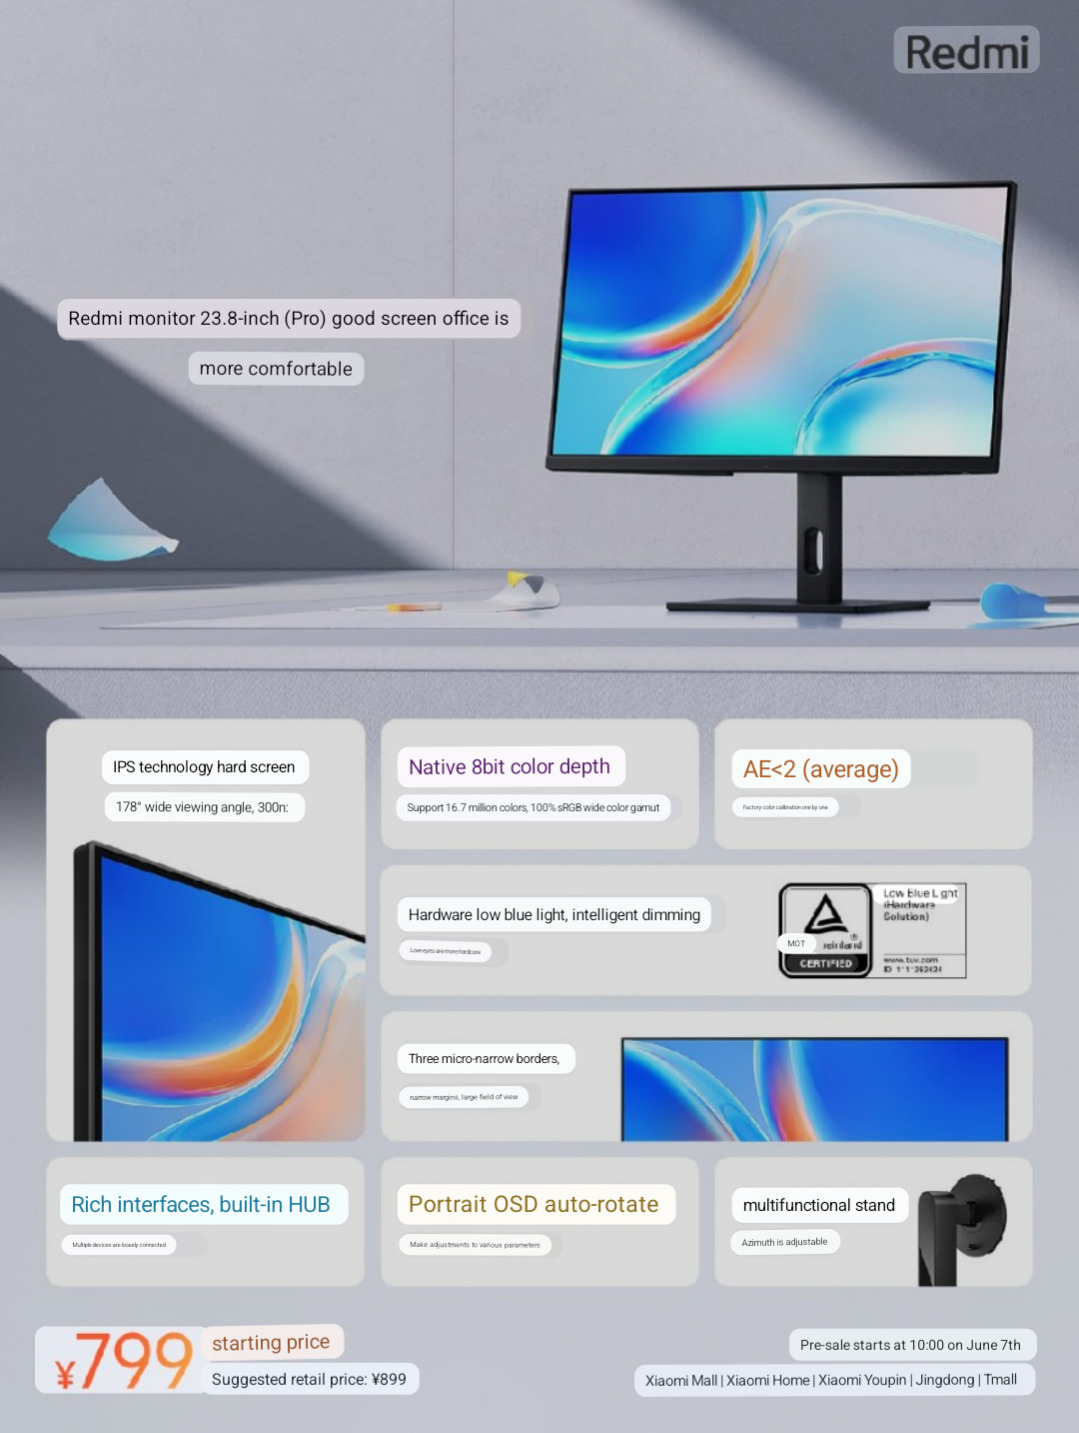 Redmi introduces 2 monitors